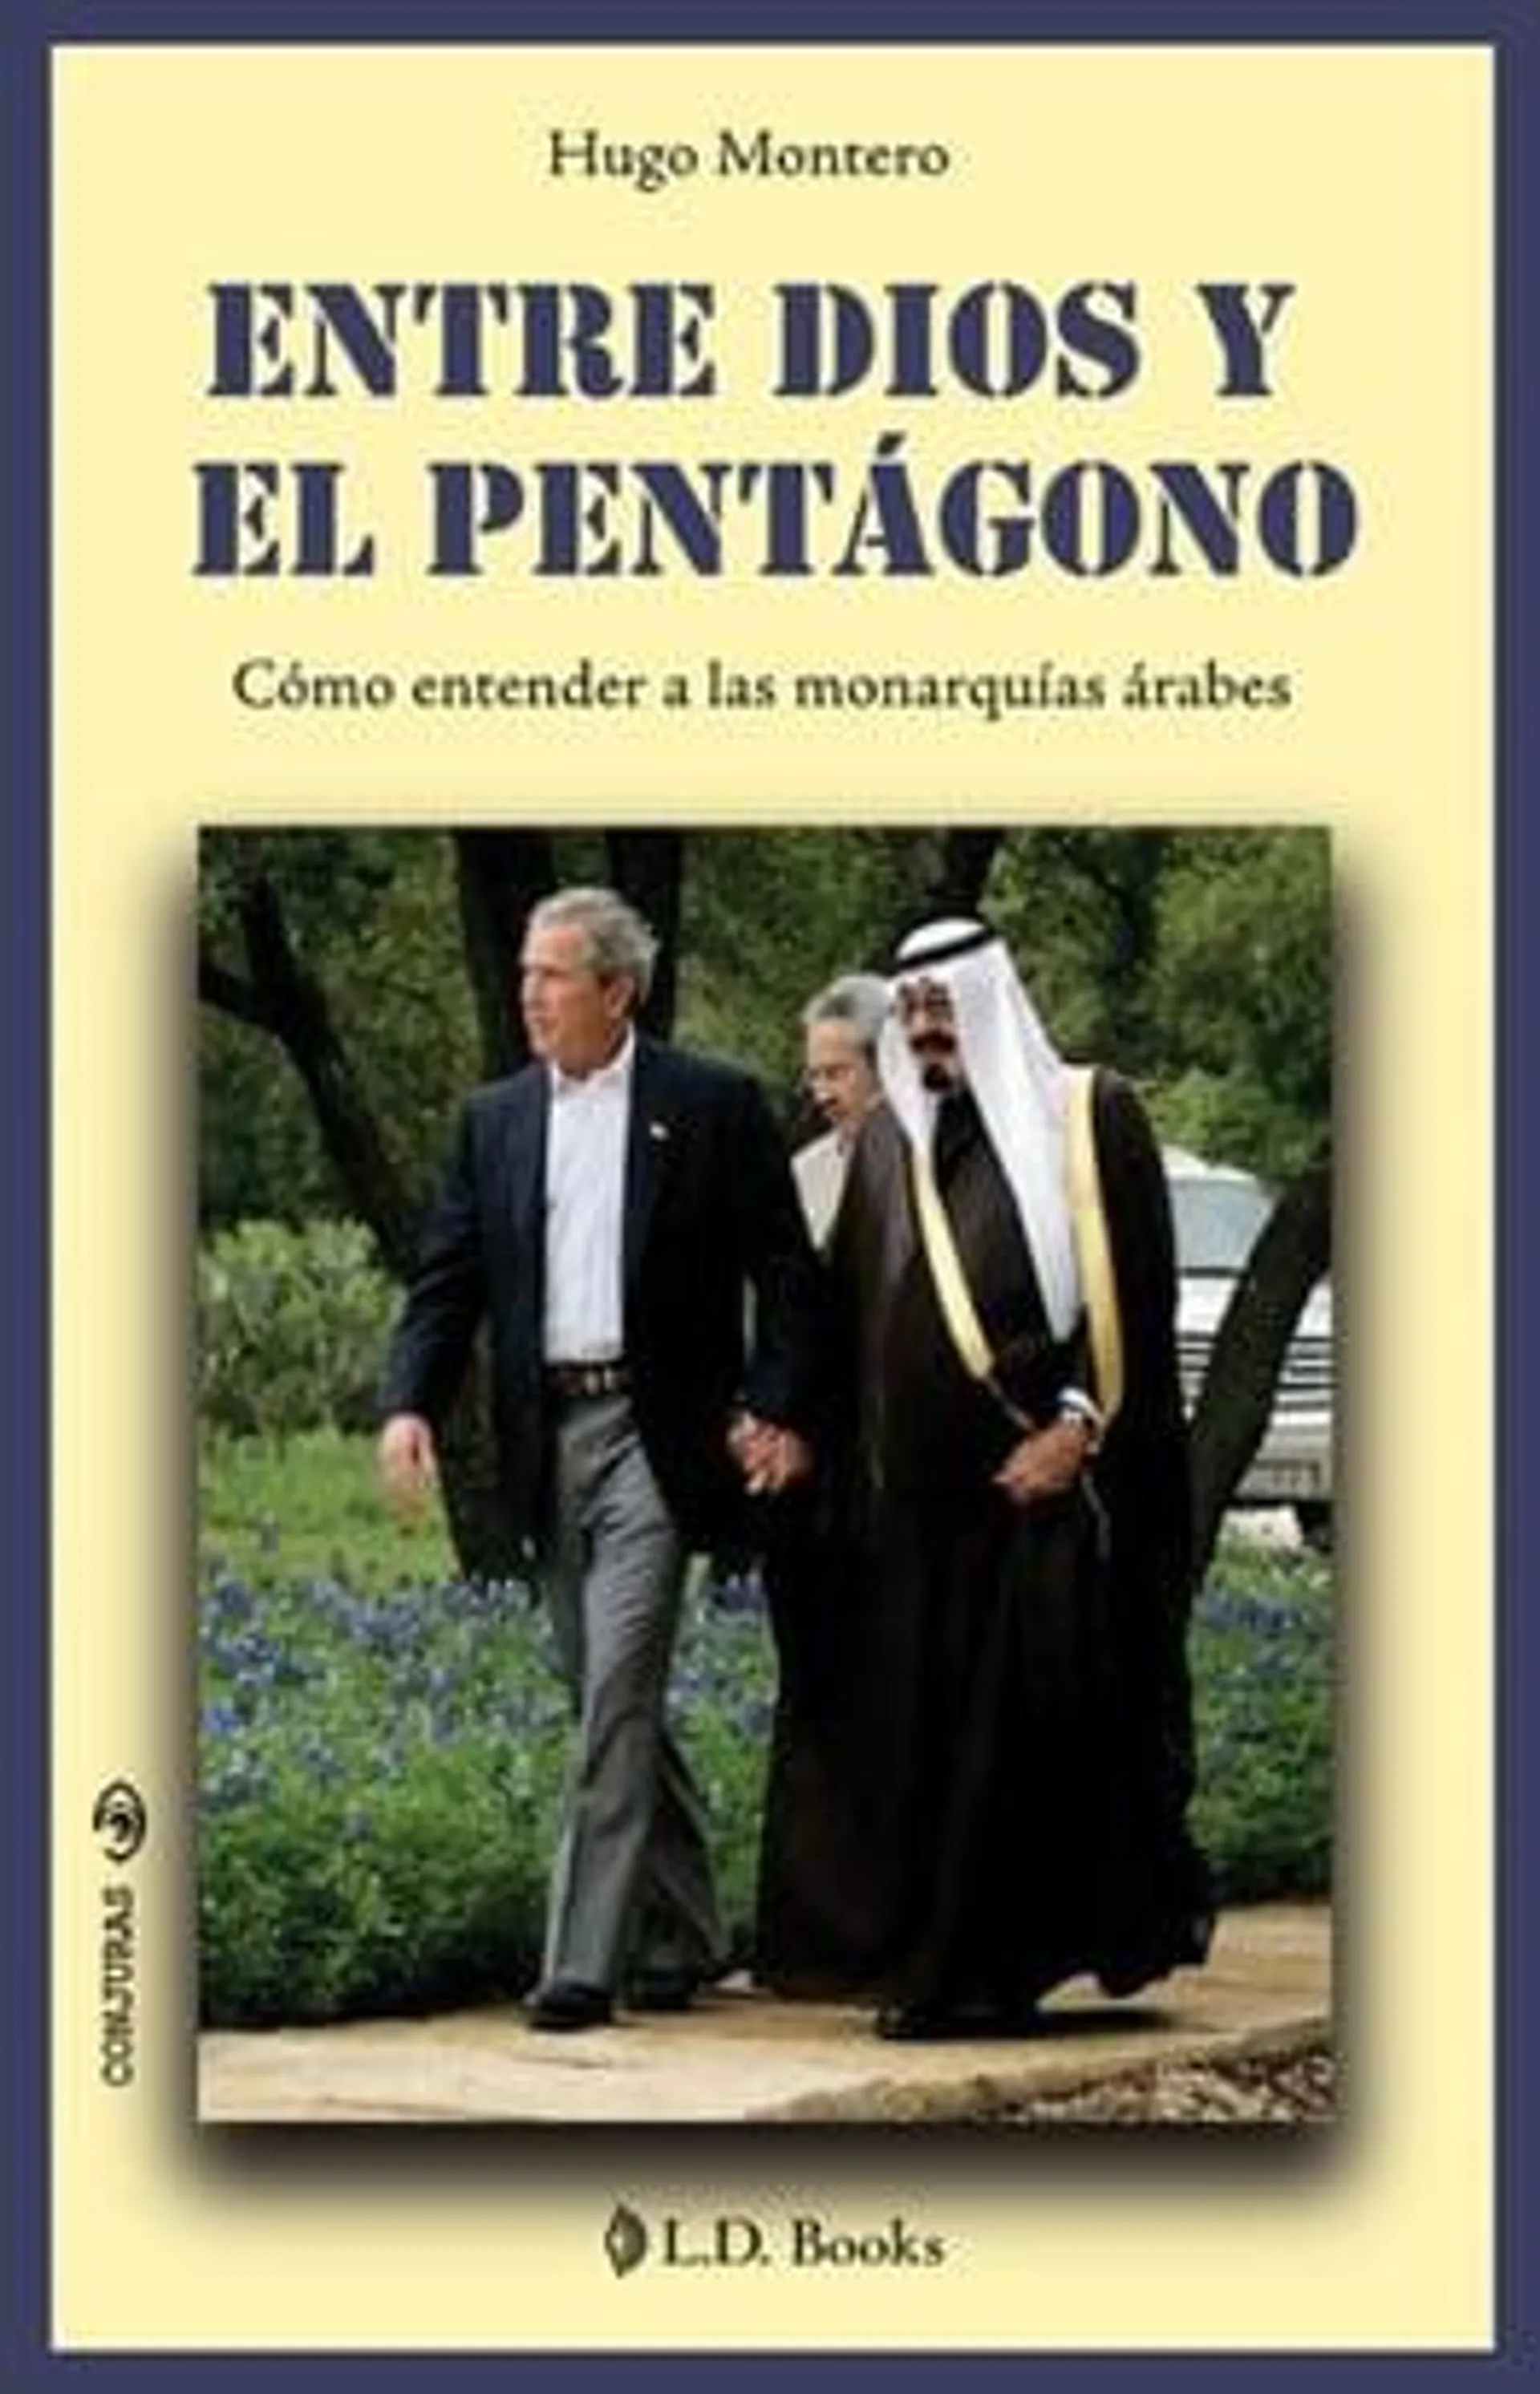 Entre Dios y el pentagono. Como entender a las monarquias arabes.